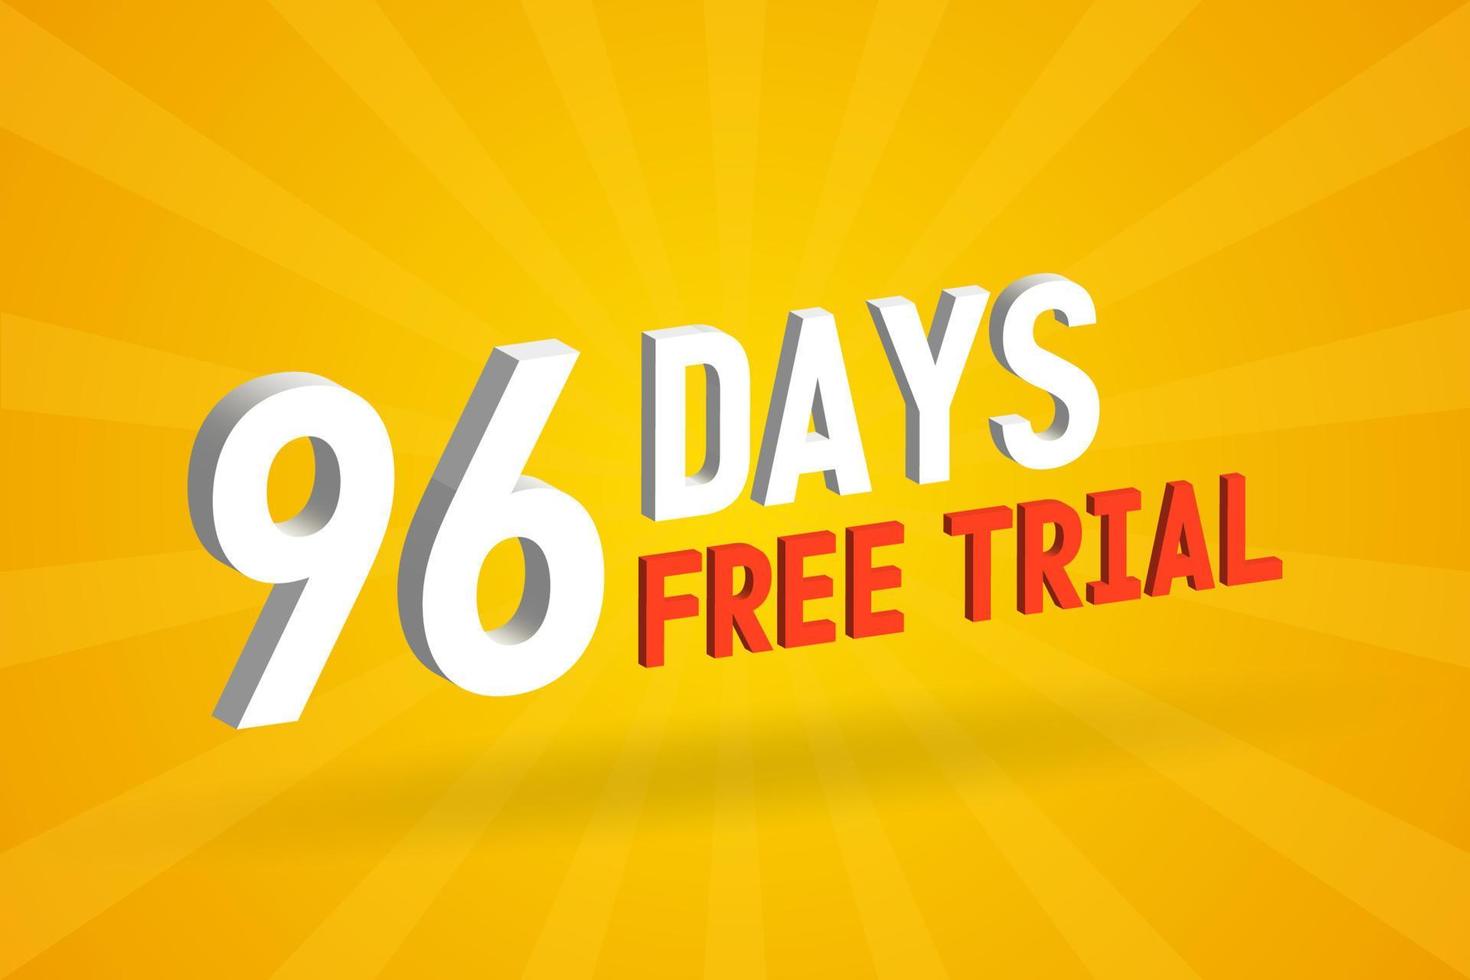 offre gratuite 96 jours d'essai gratuit vecteur de stock de texte 3d